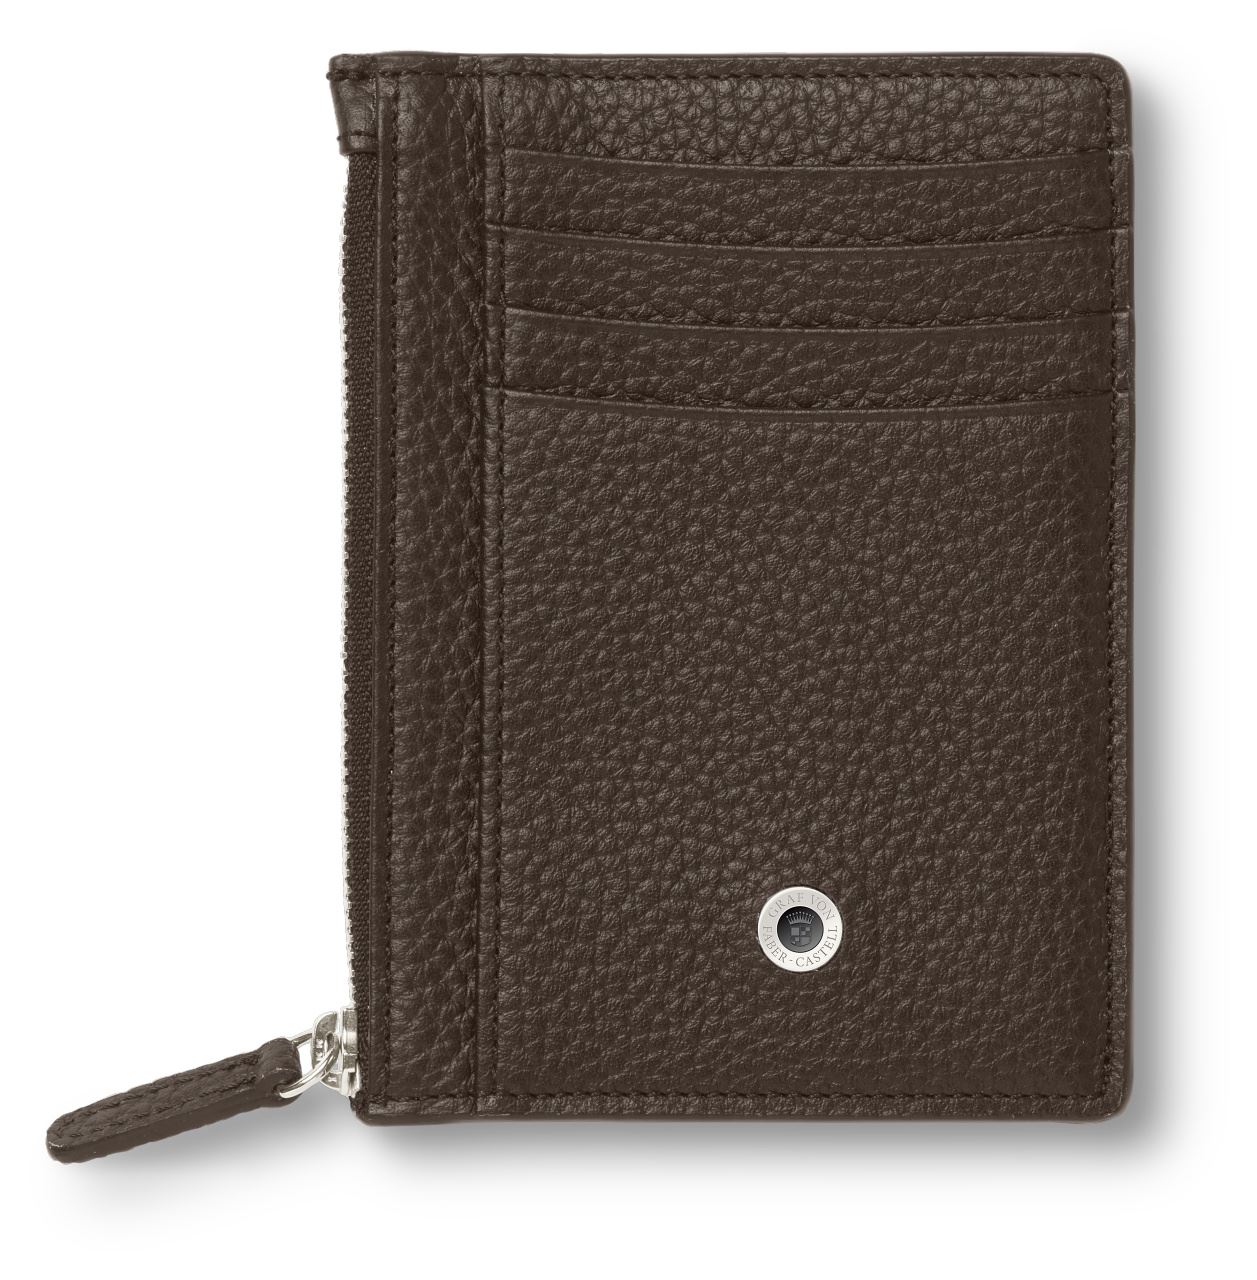 Graf-von-Faber-Castell - Credit card case with zipper Cashmere, dark brown